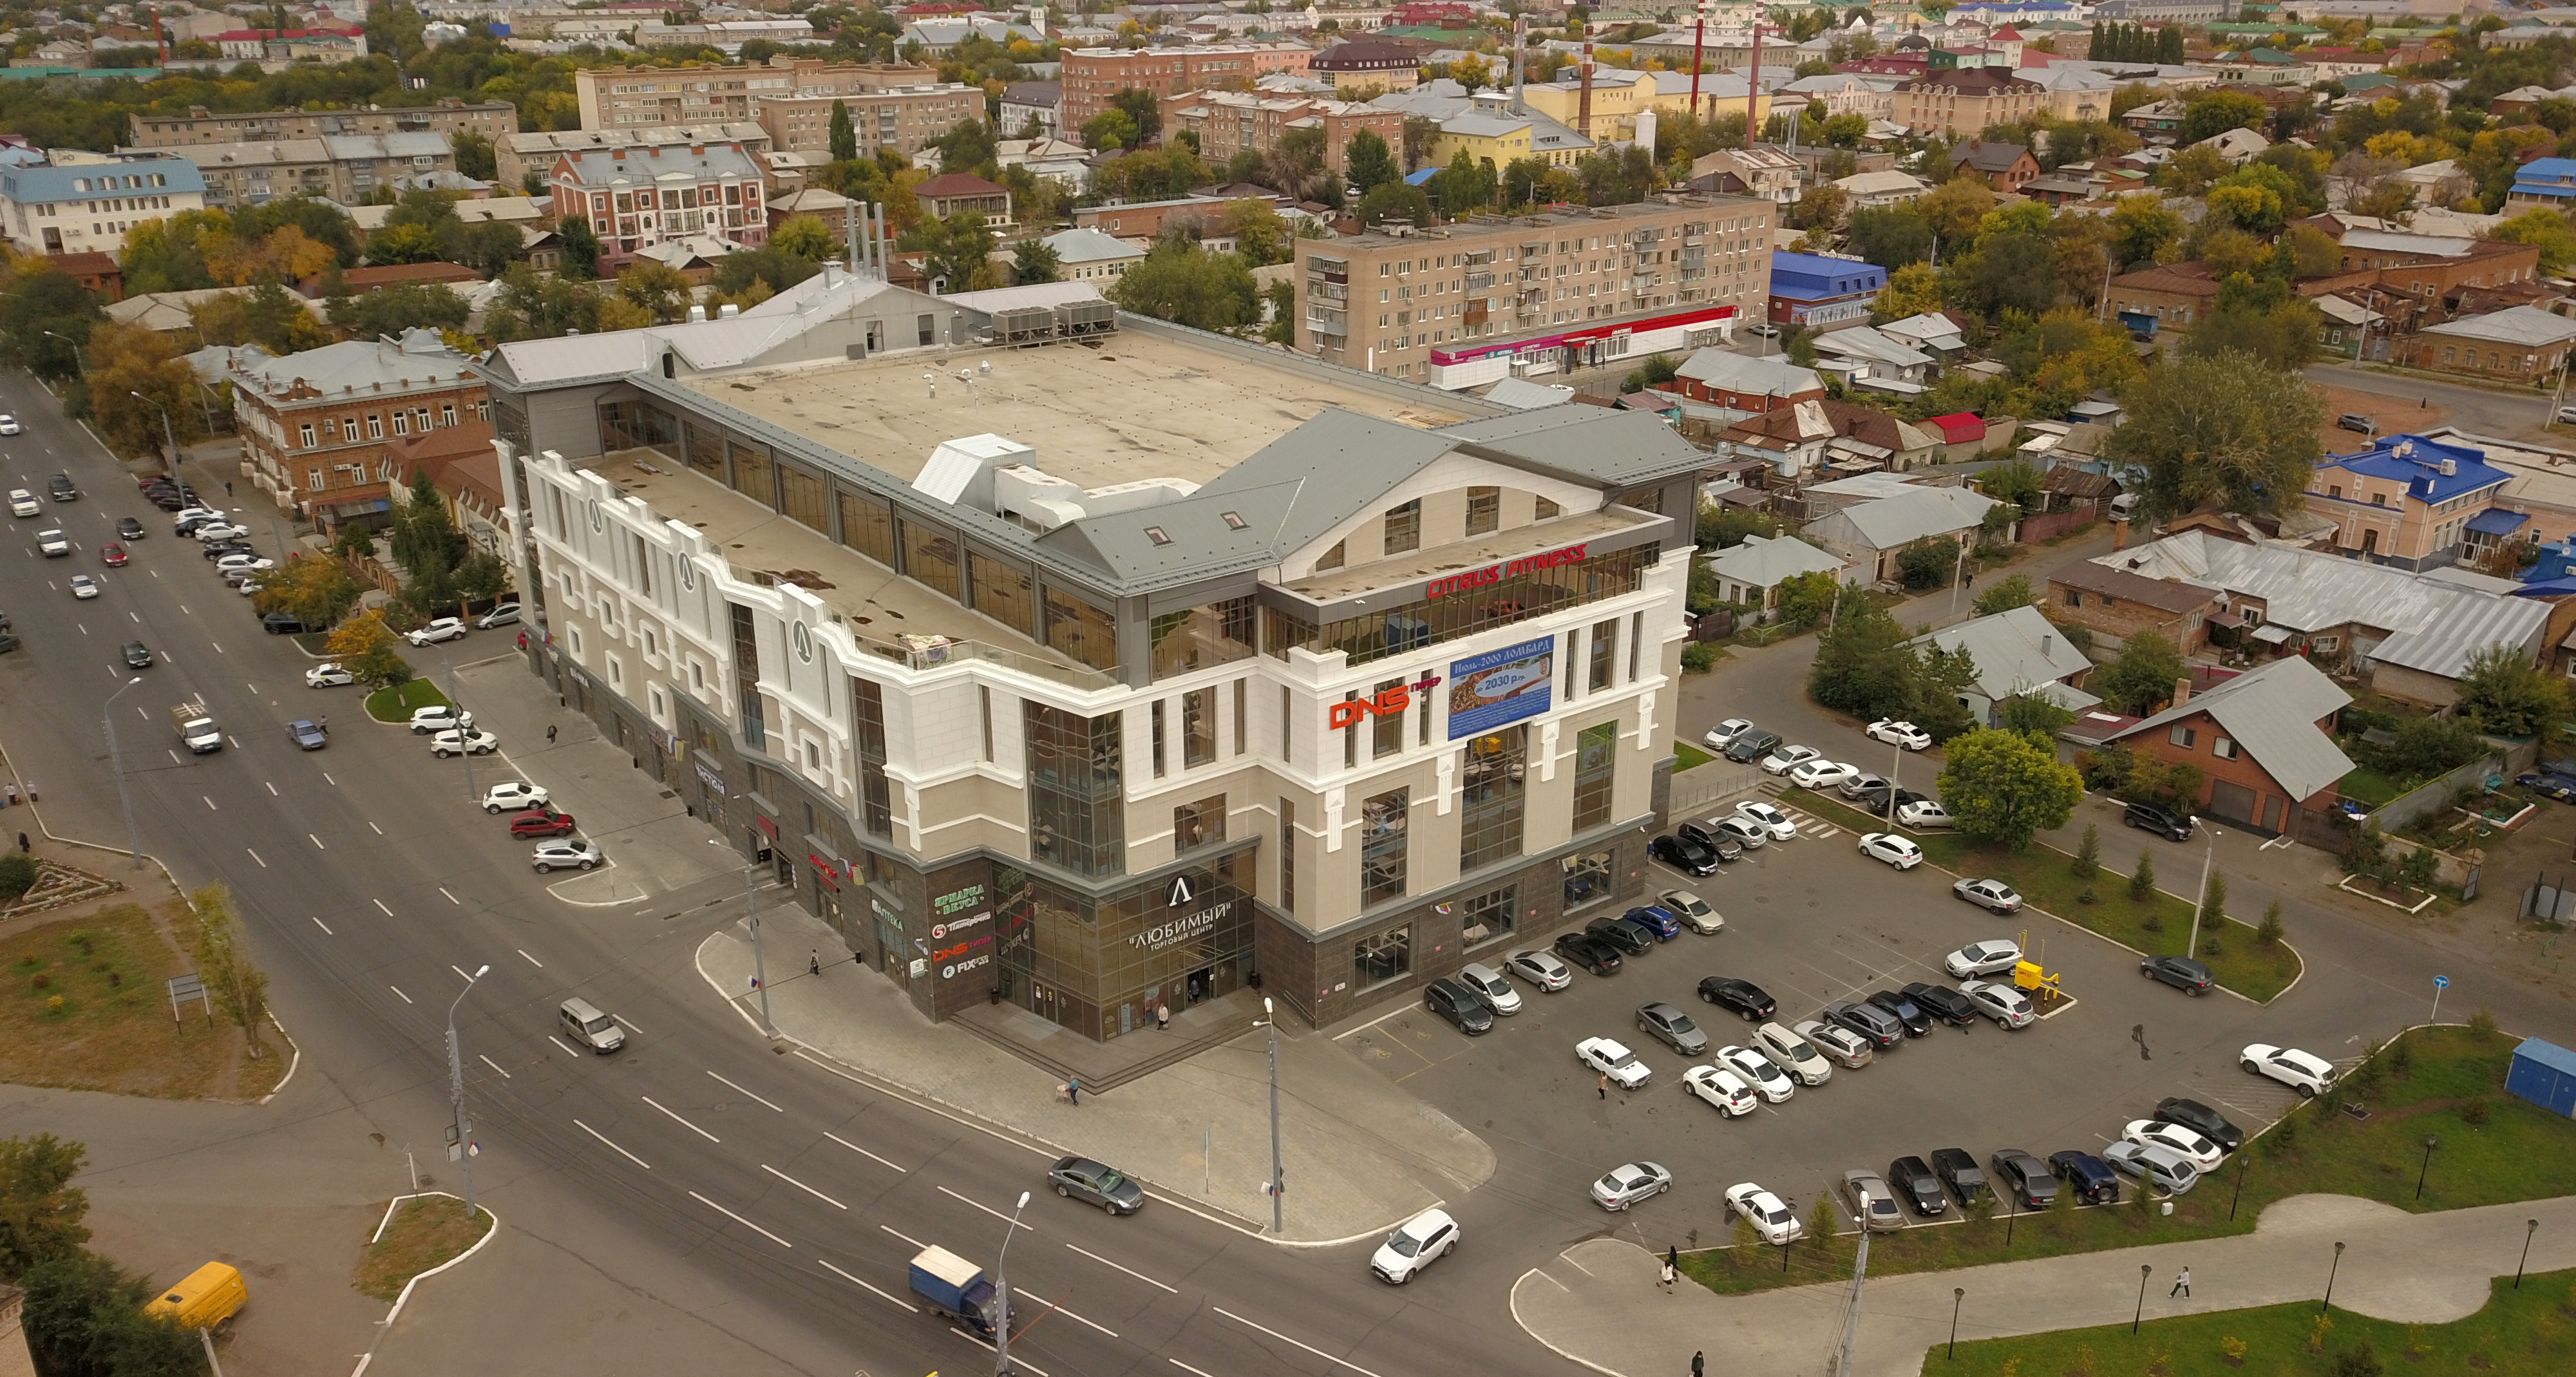 Оренбург фото на документы адреса в центре